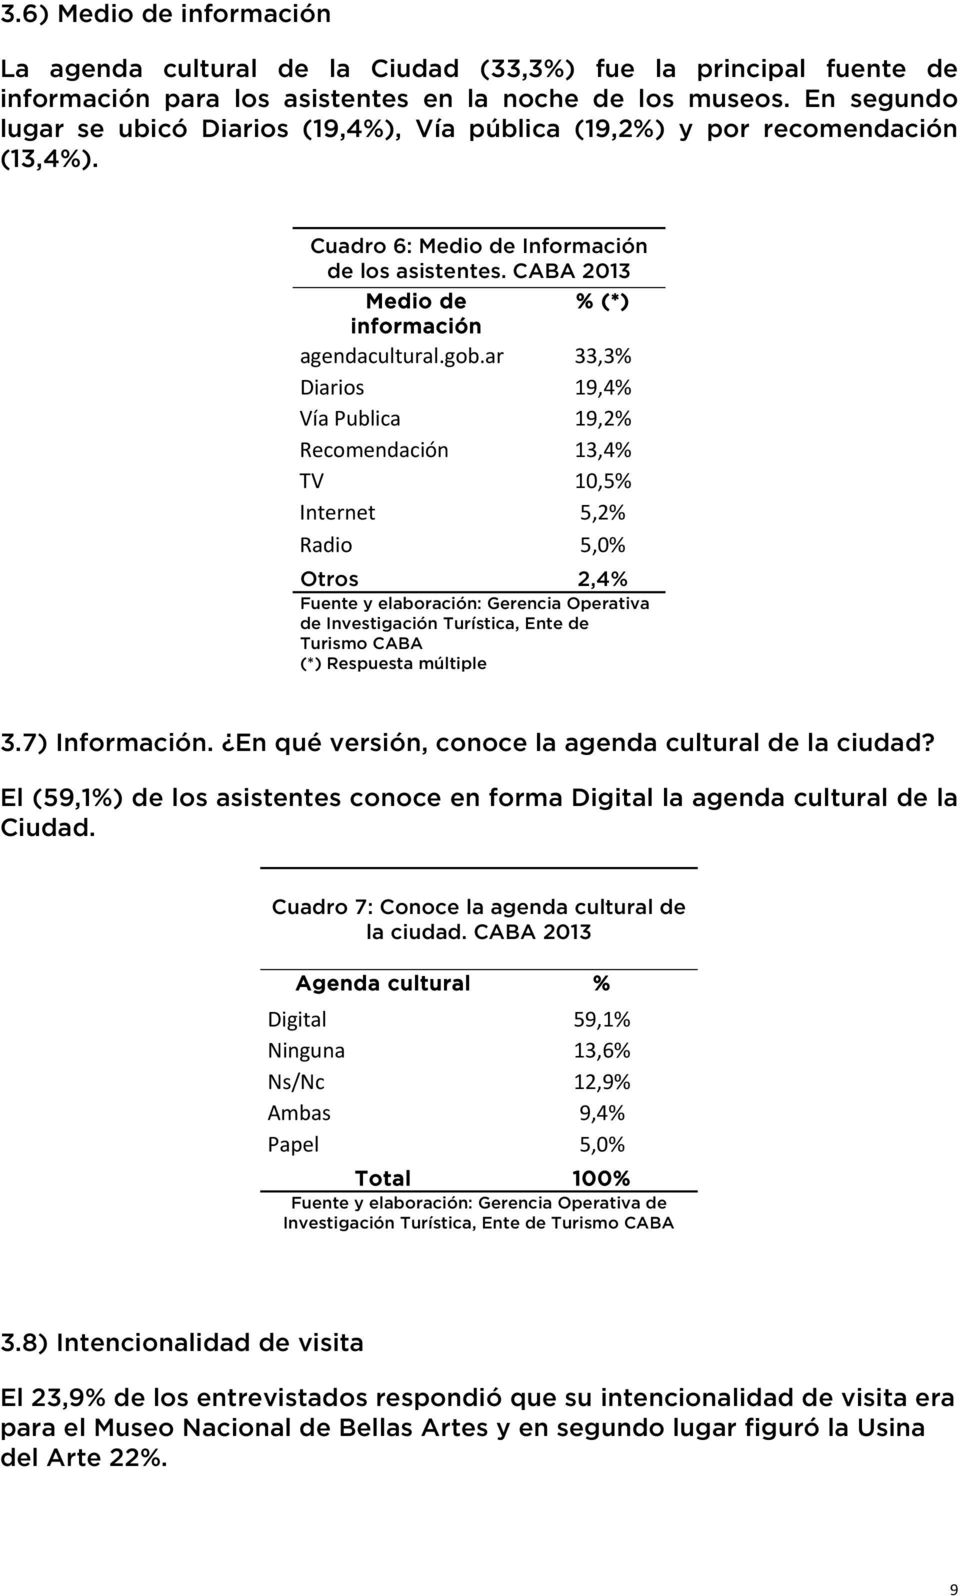 ar 33,3% Diarios 19,4% Vía Publica 19,2% Recomendación 13,4% TV 10,5% Internet 5,2% Radio 5,0% Otros 2,4% de Investigación Turística, Ente de Turismo CABA (*) Respuesta múltiple 3.7) Información.